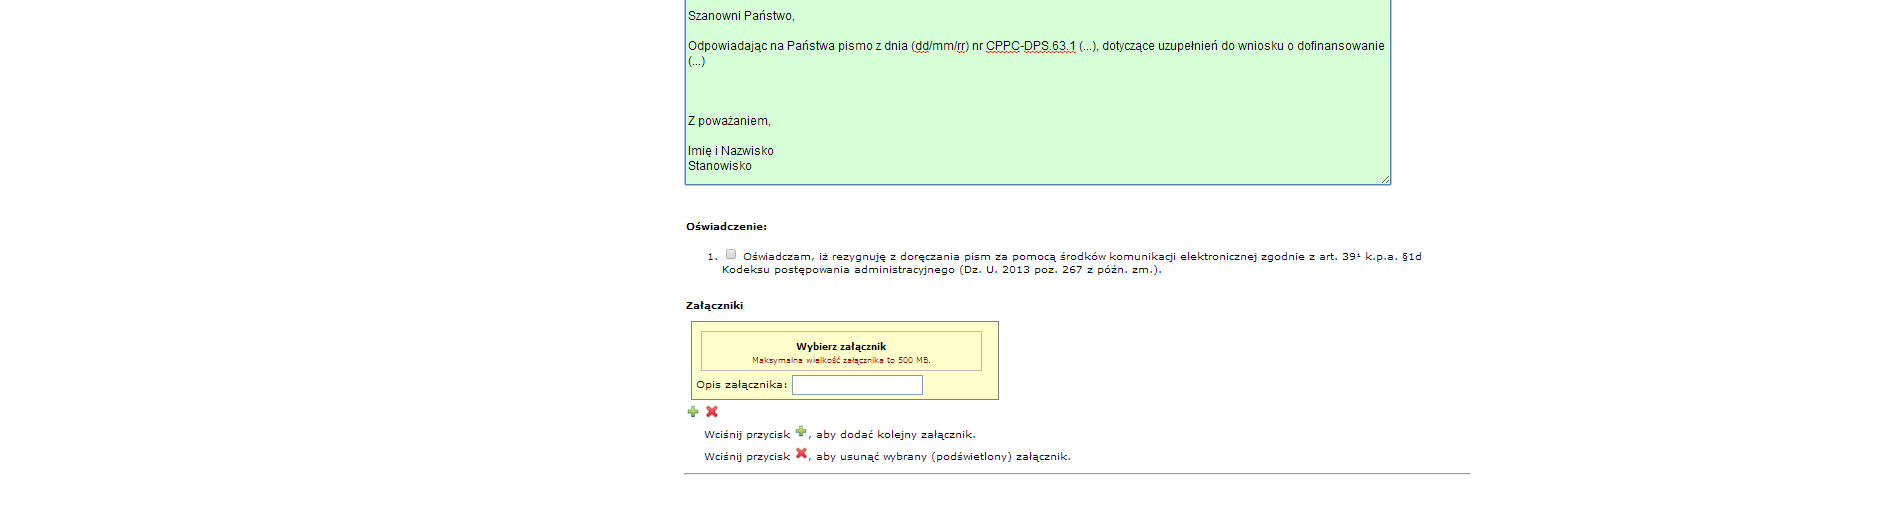 W trybie pracy z formularzem Korekty wniosku o dofinansowanie 1.1 POPC, Centrum Projektów Polska Cyfrowa sugeruje w wierszu Tytuł pisma wpisać Numer referencyjny wniosku np. POPC.01.